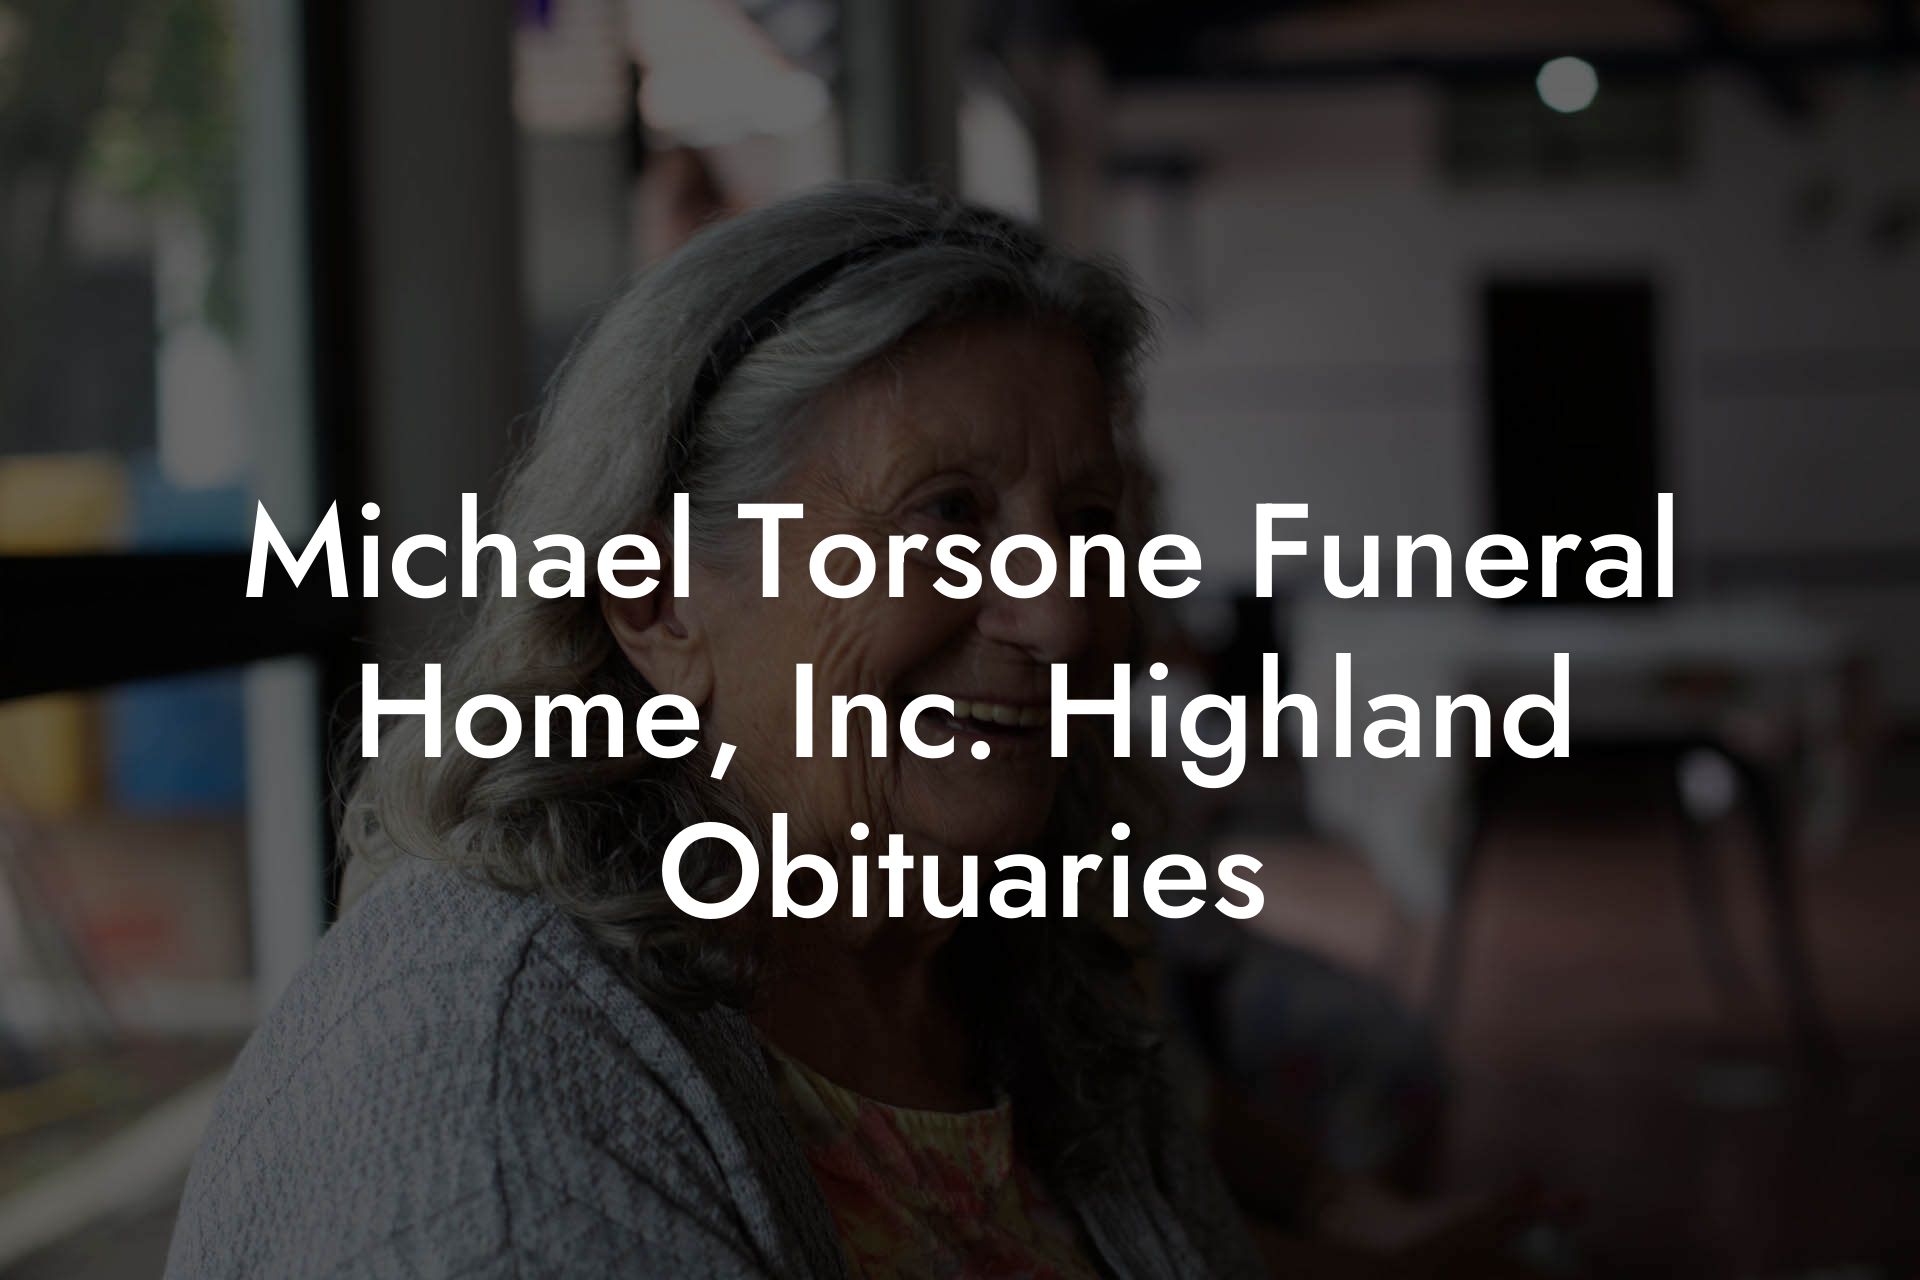 Michael Torsone Funeral Home, Inc. Highland Obituaries